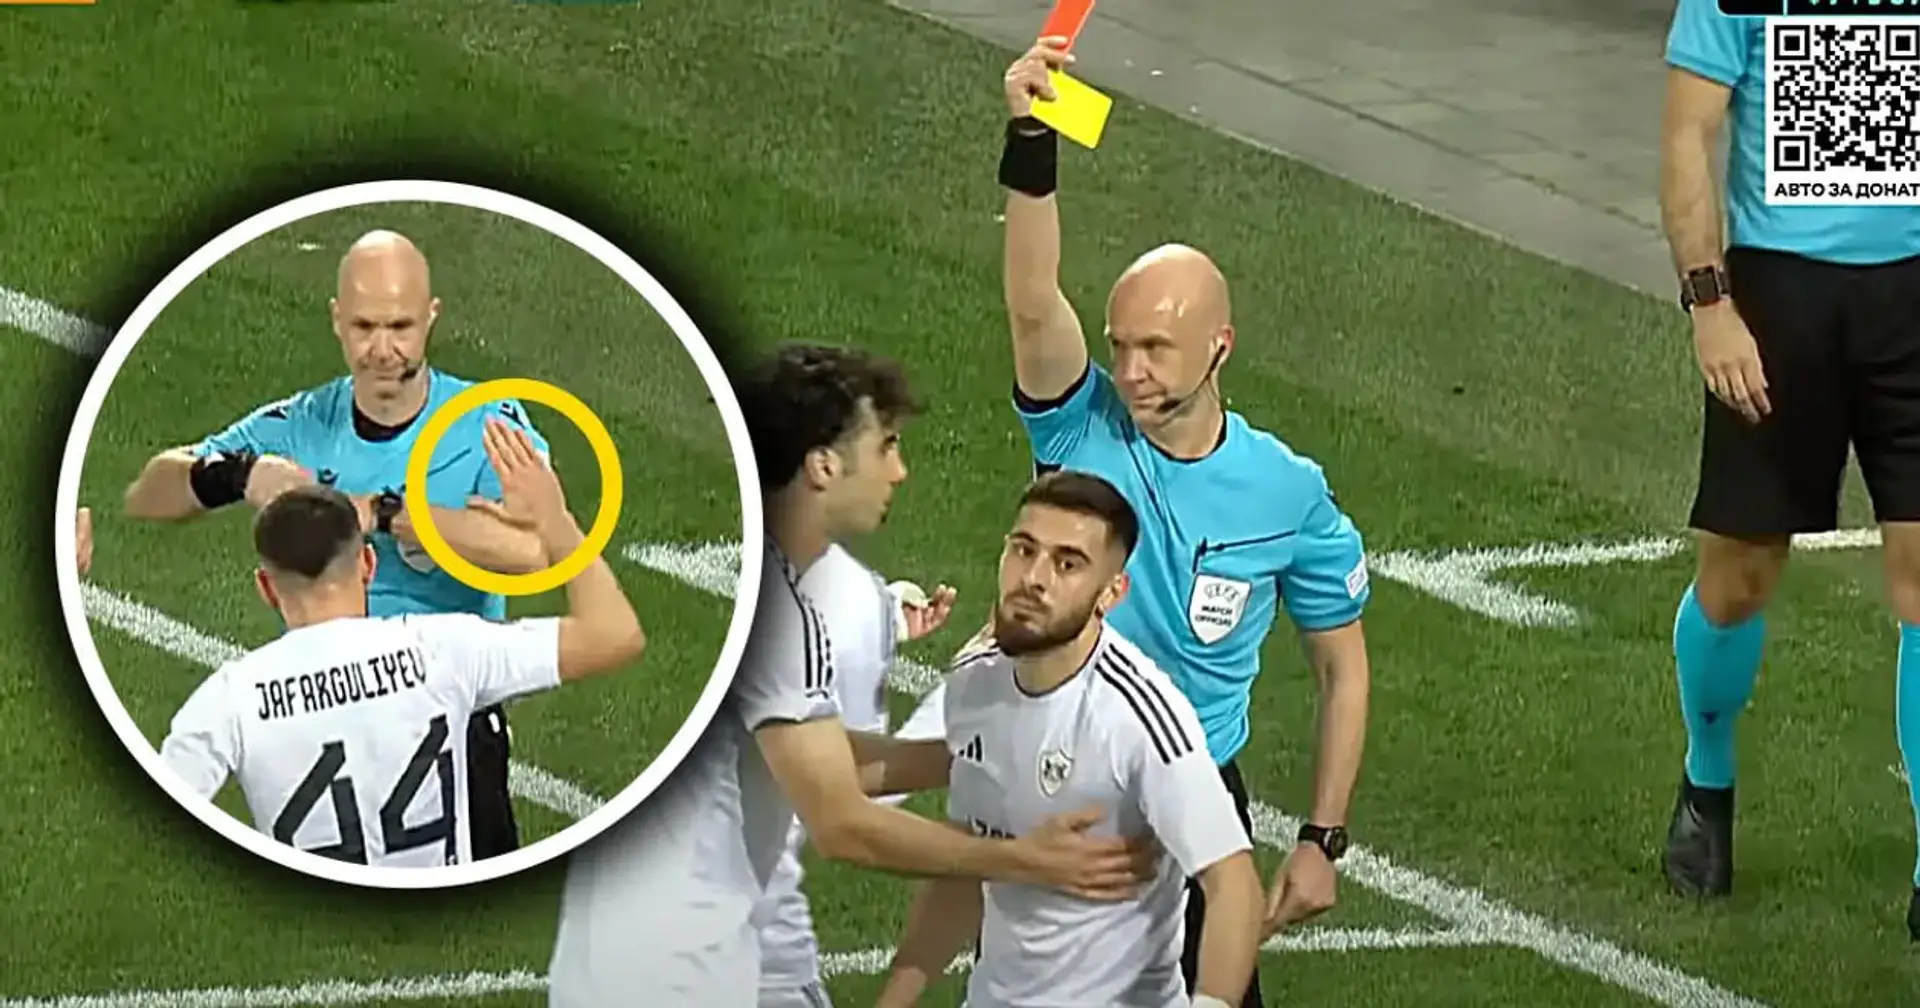 Meme des Spieltags in der Europa League: Ein Spieler dachte, seine gelbe Karte würde einfach annulliert, wurde aber stattdessen mit Rot bestraft